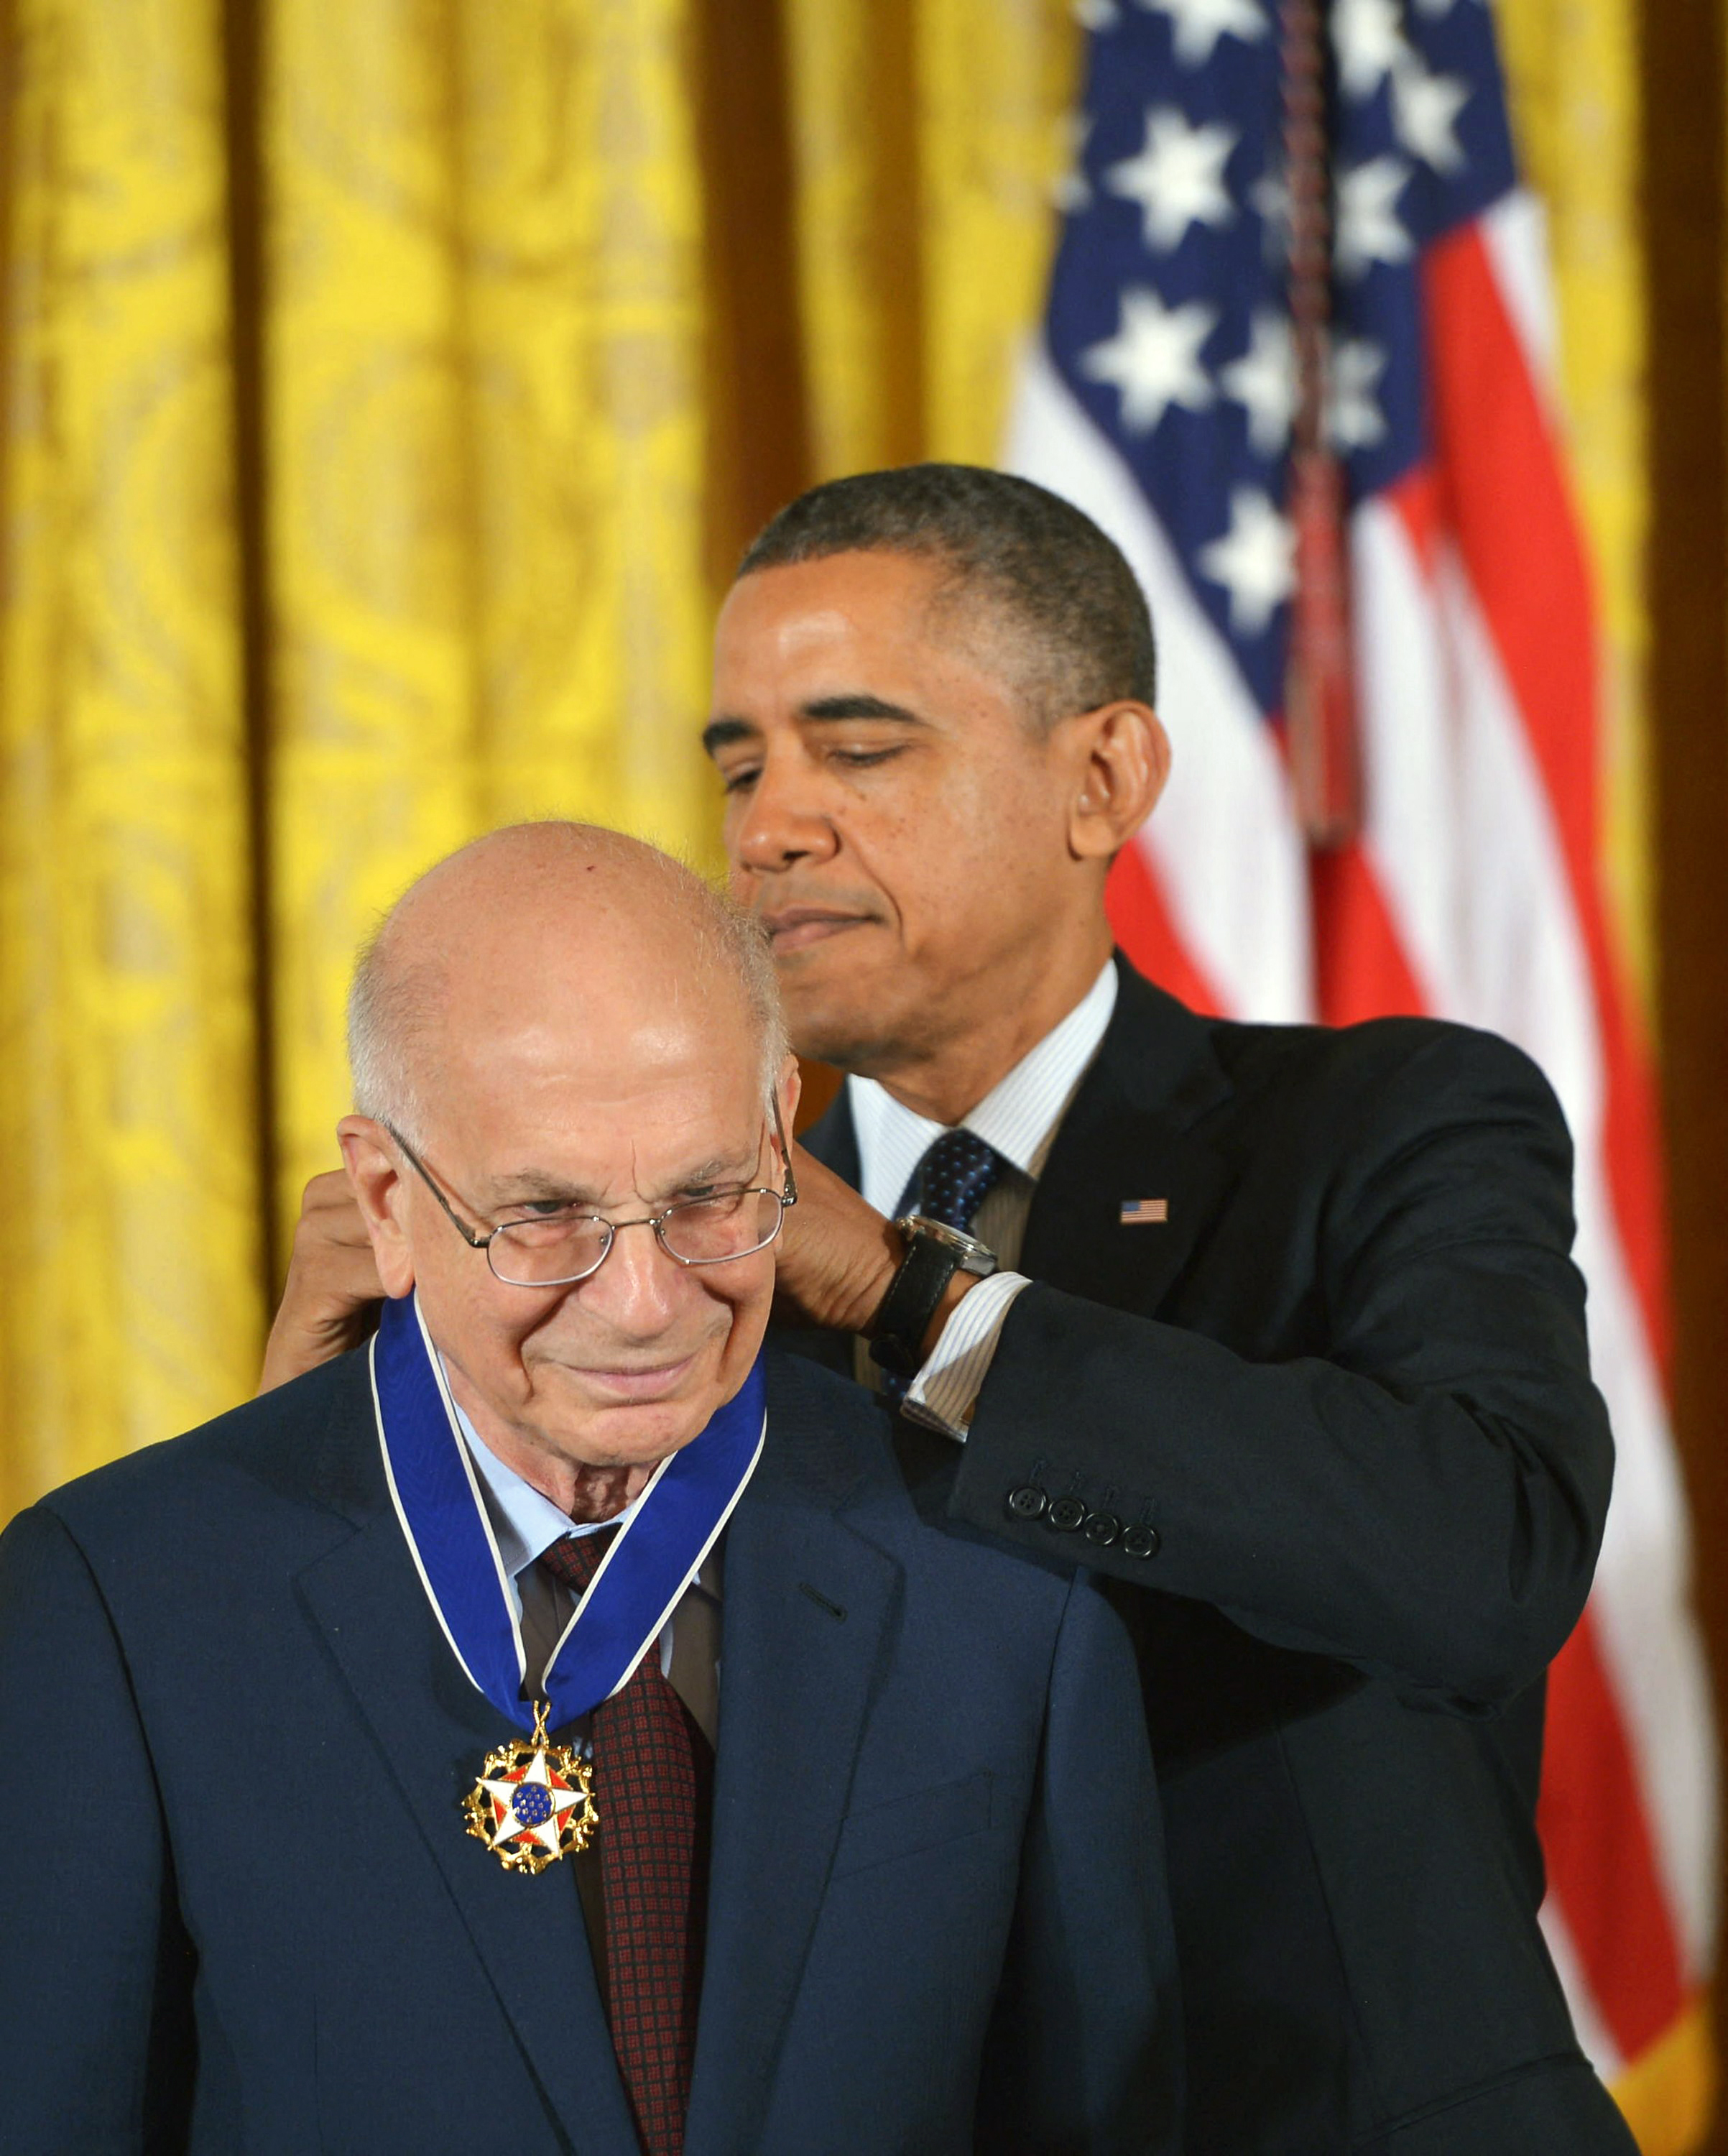 Der frühere US-Präsident Barack Obama überreichte Kahneman 2013 die Presidential Medal of Freedom